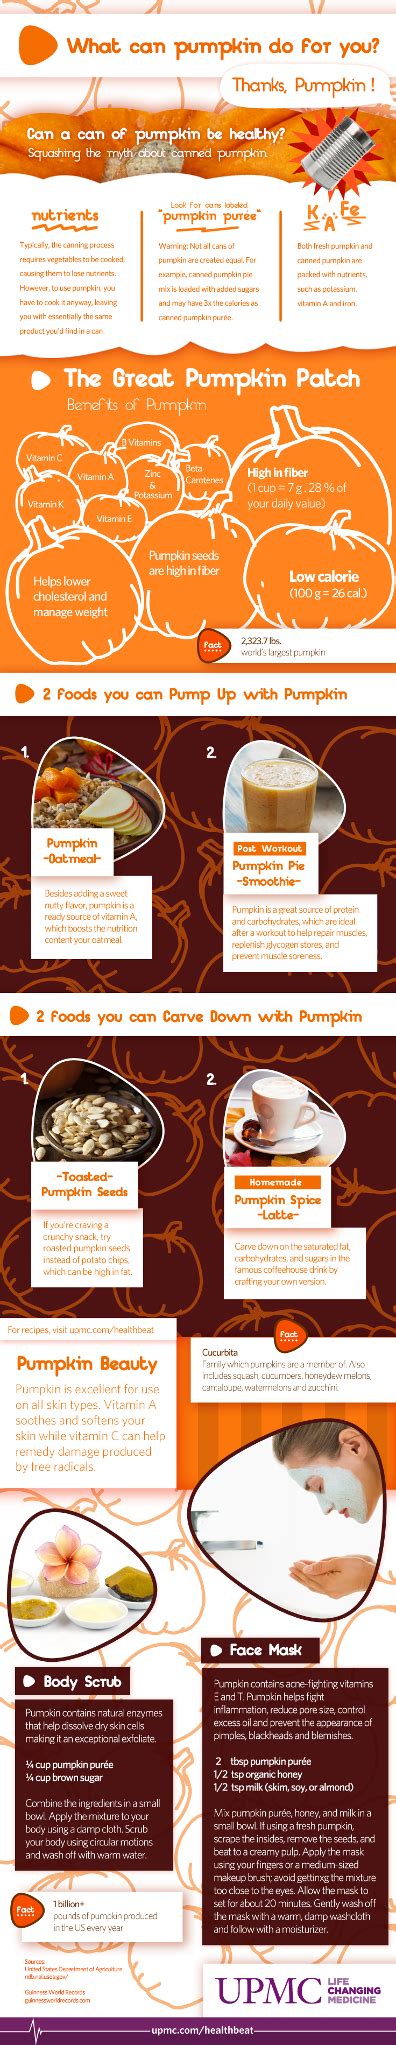 Infographic Health Benefits Of Eating Pumpkin Upmc Healthbeat